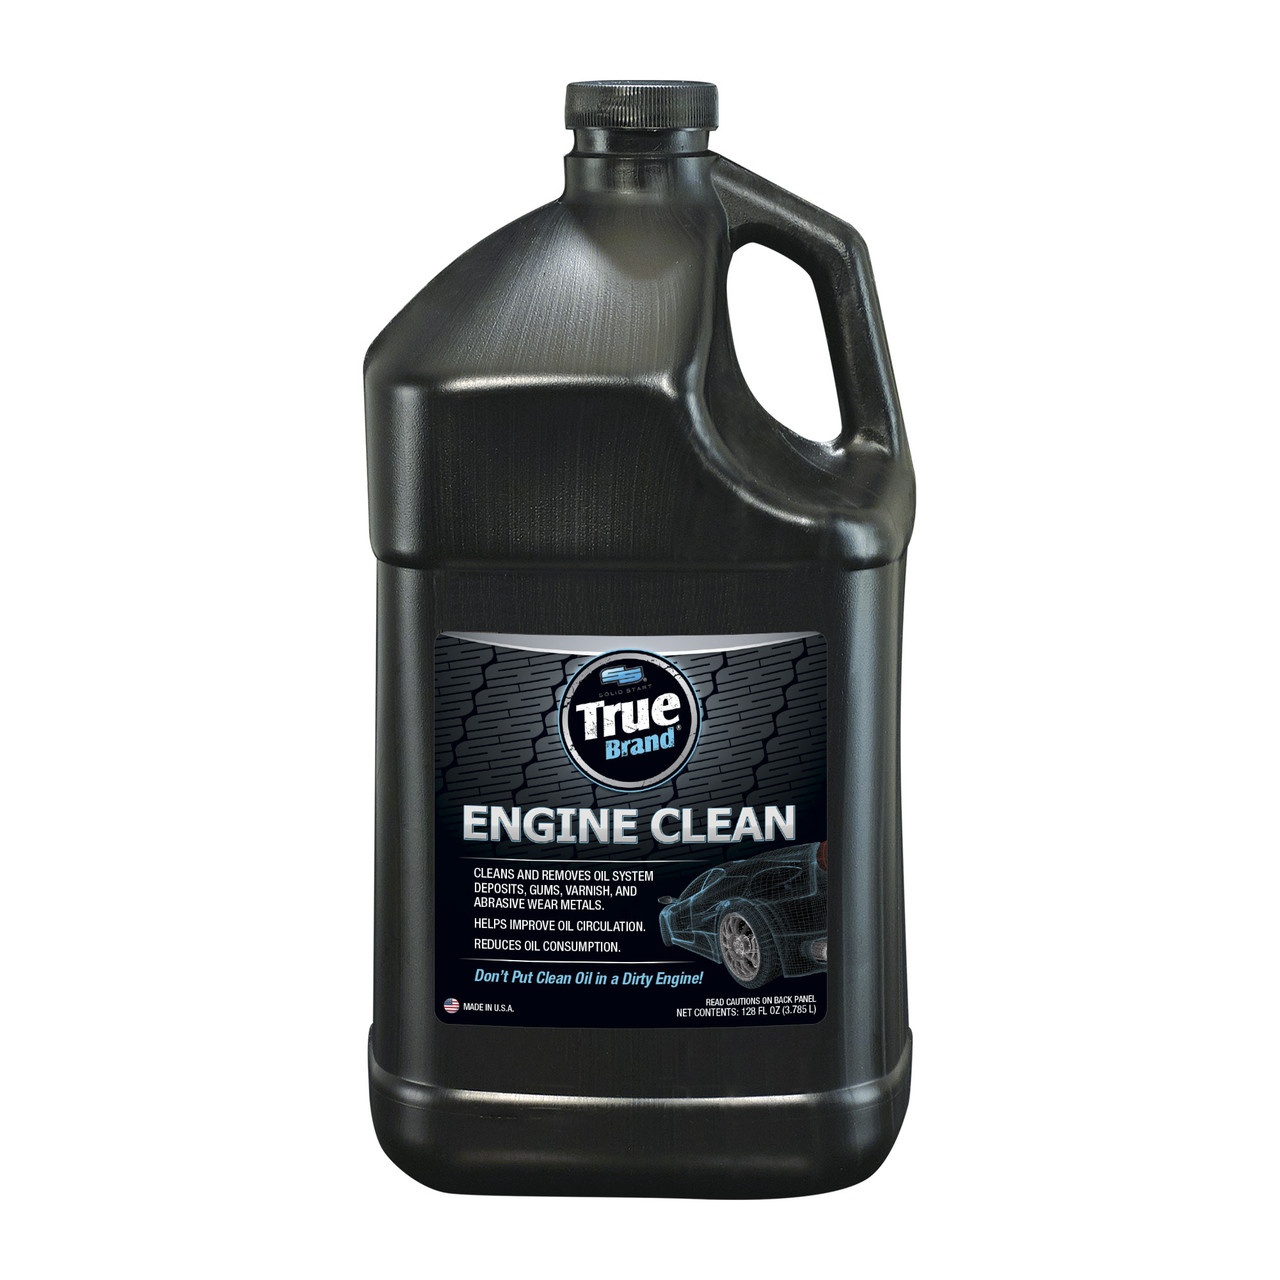 True Brand Engine Clean